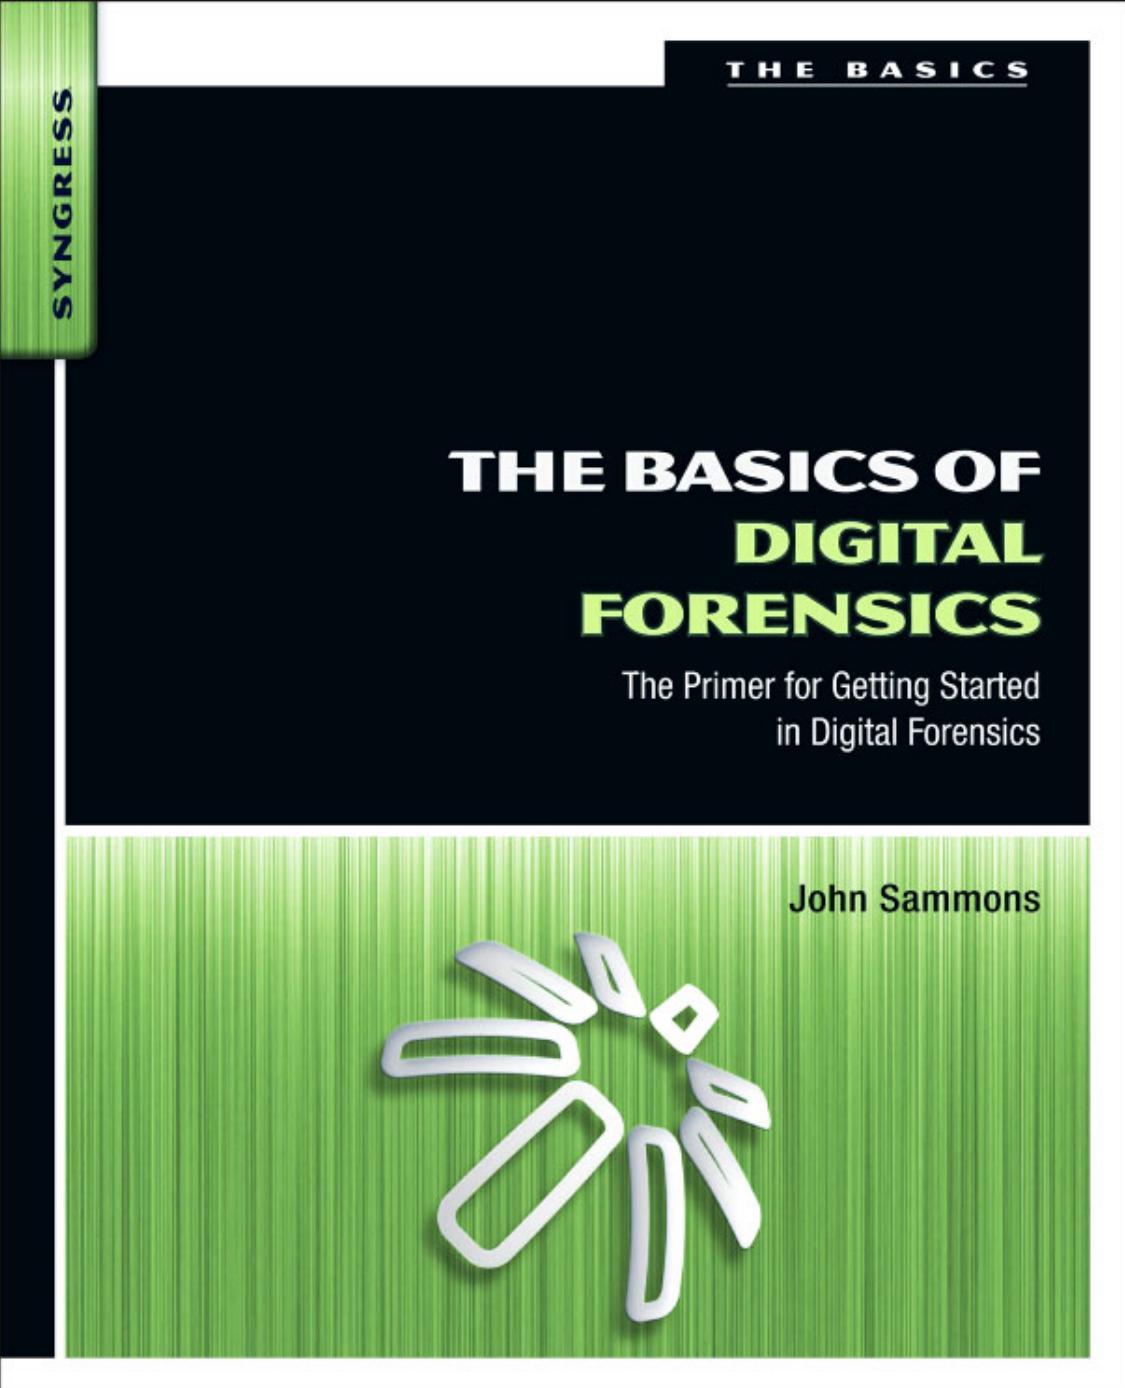 The Basics of Digital Forensics by John Sammons